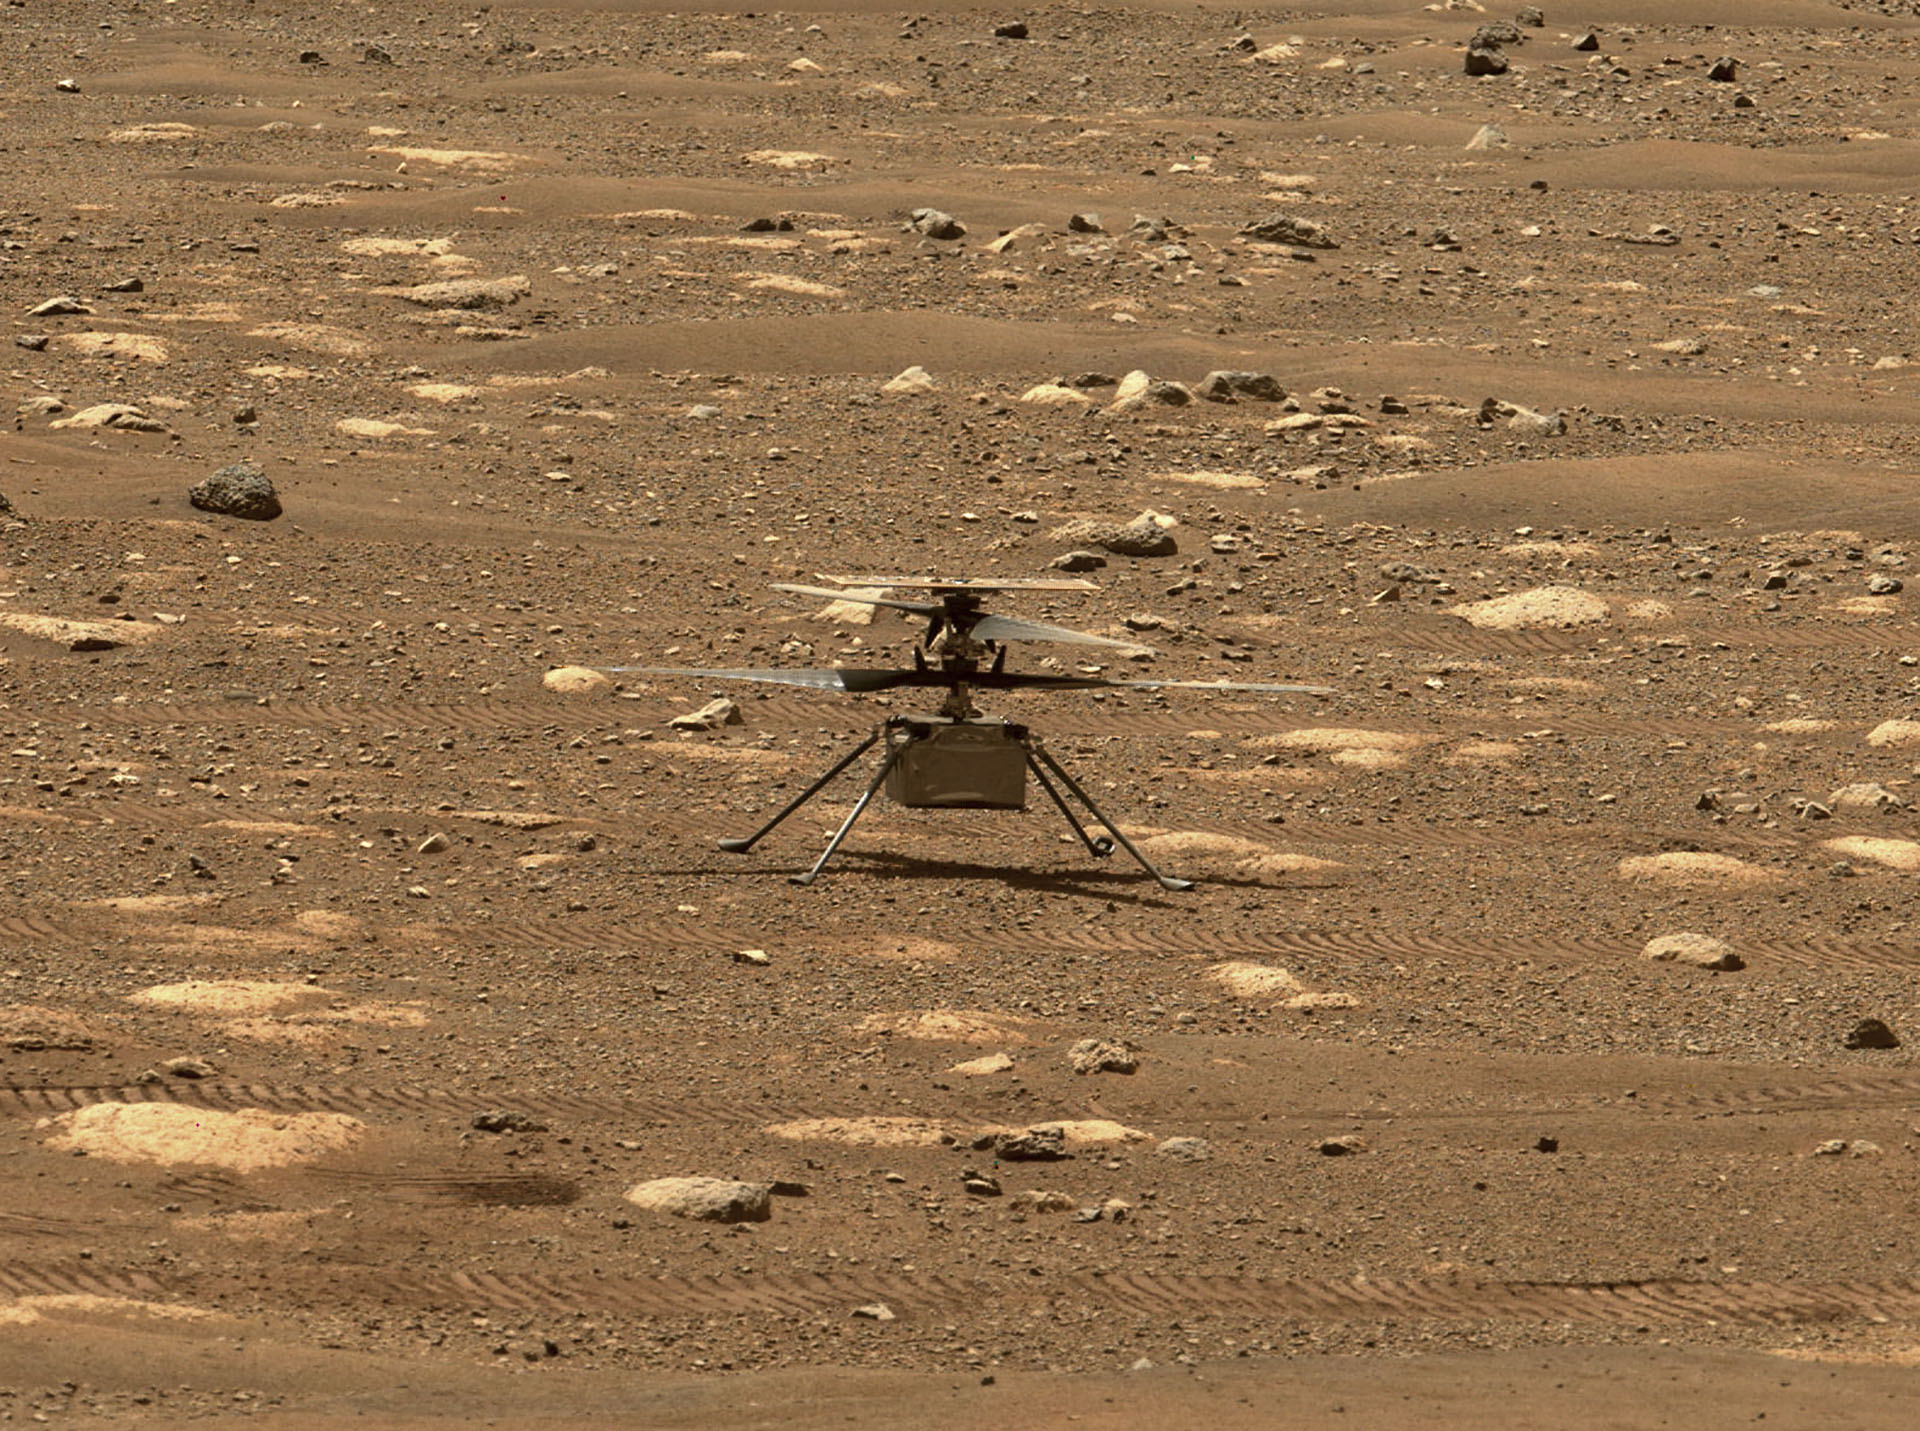 Negyedjére már nem sikerül felemelkedni a NASA marshelikopterének a Marson